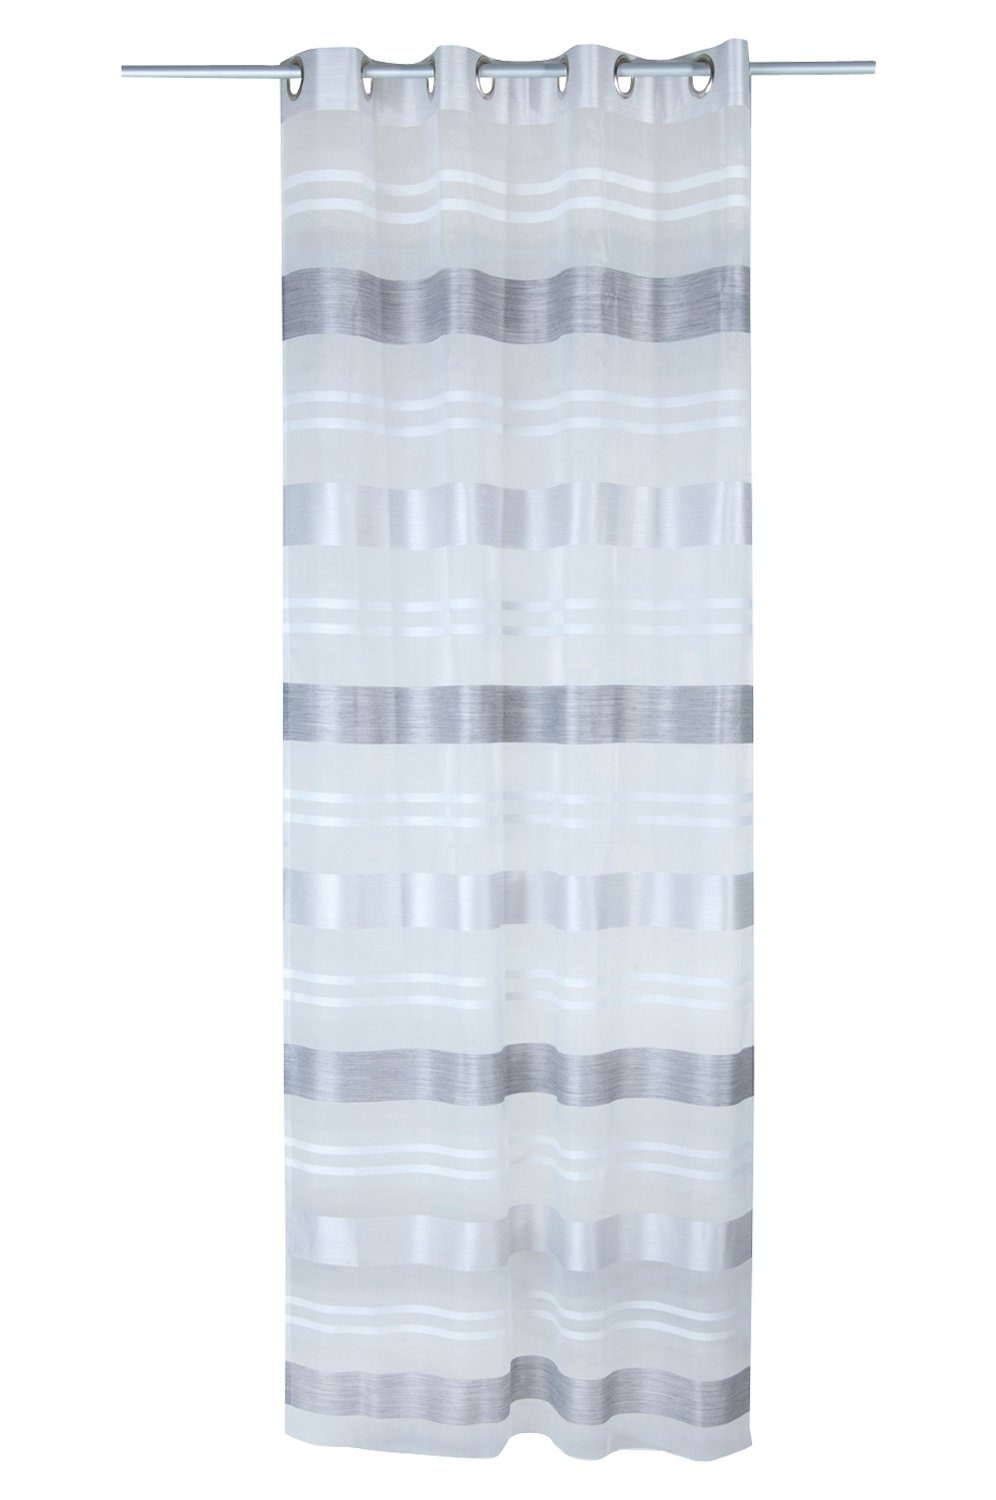 Vorhang Ösenvorhang KIRA, Grau, B 135 cm, L 245 cm, Ösen, halbtransparent,  mit einer Größe von 135 x 245 cm